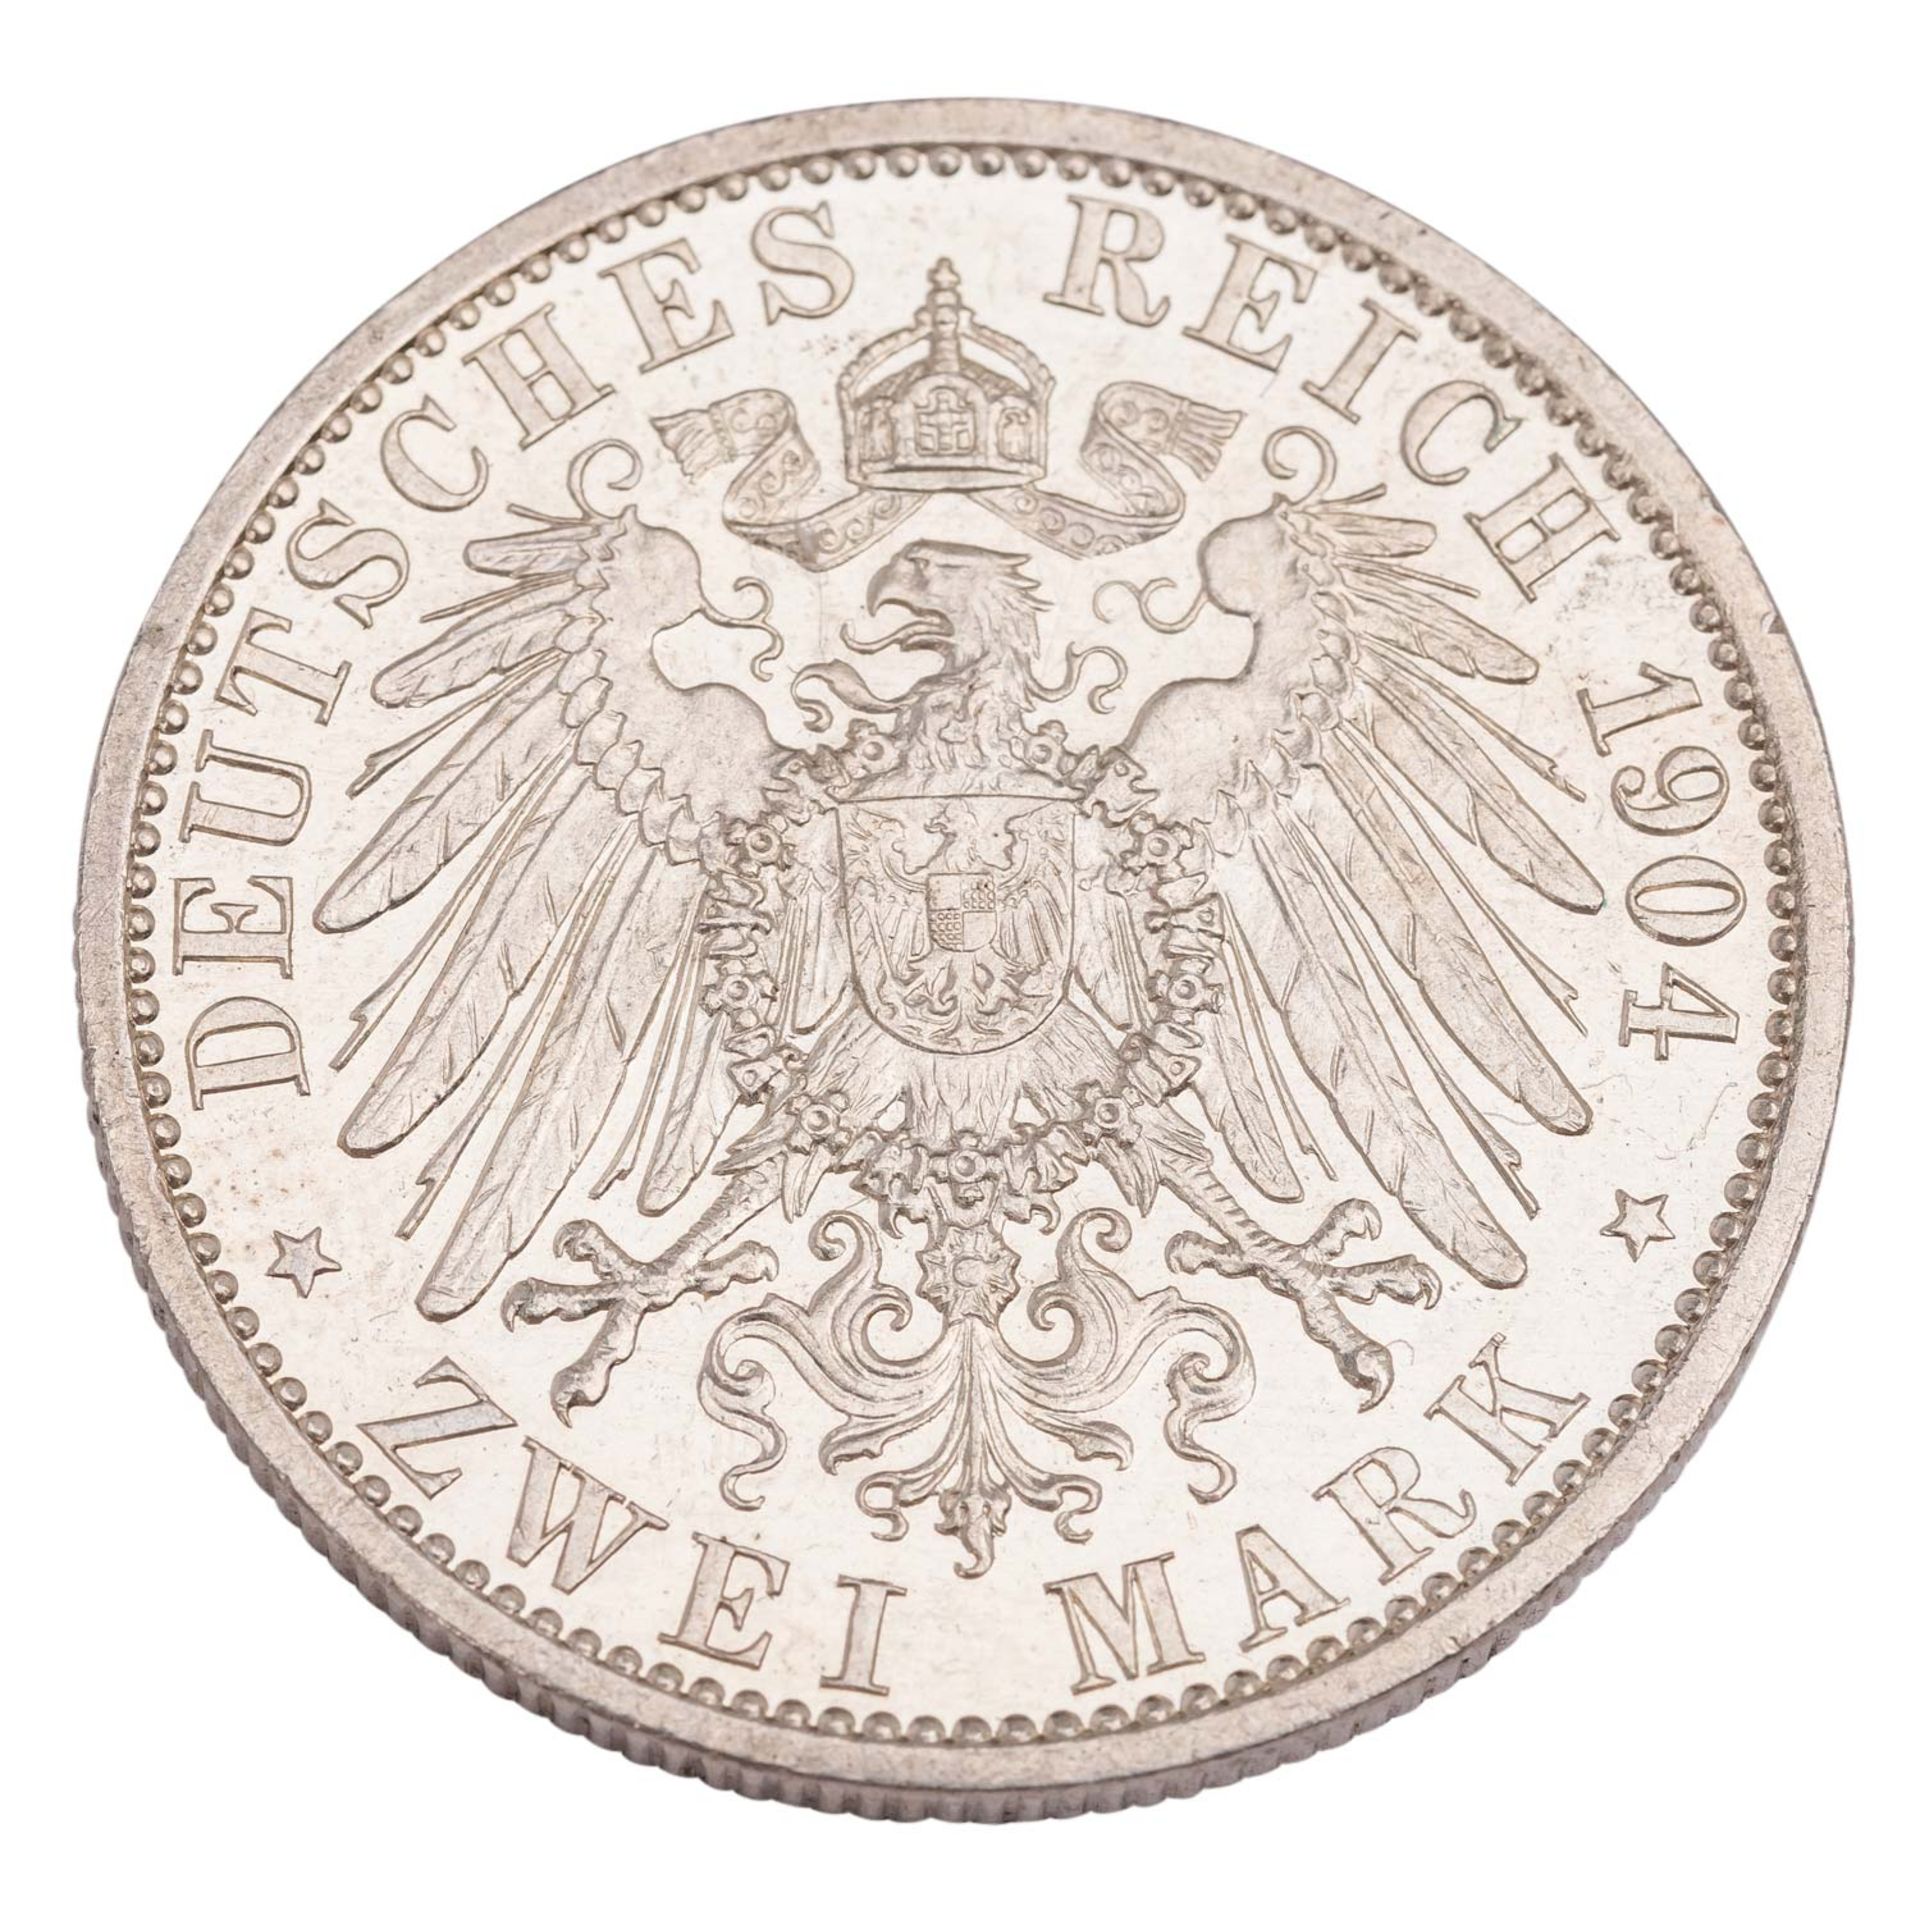 Deutsches Kaiserreich / Mecklenburg Schwerin - 2 Mark 1904, - Image 2 of 2